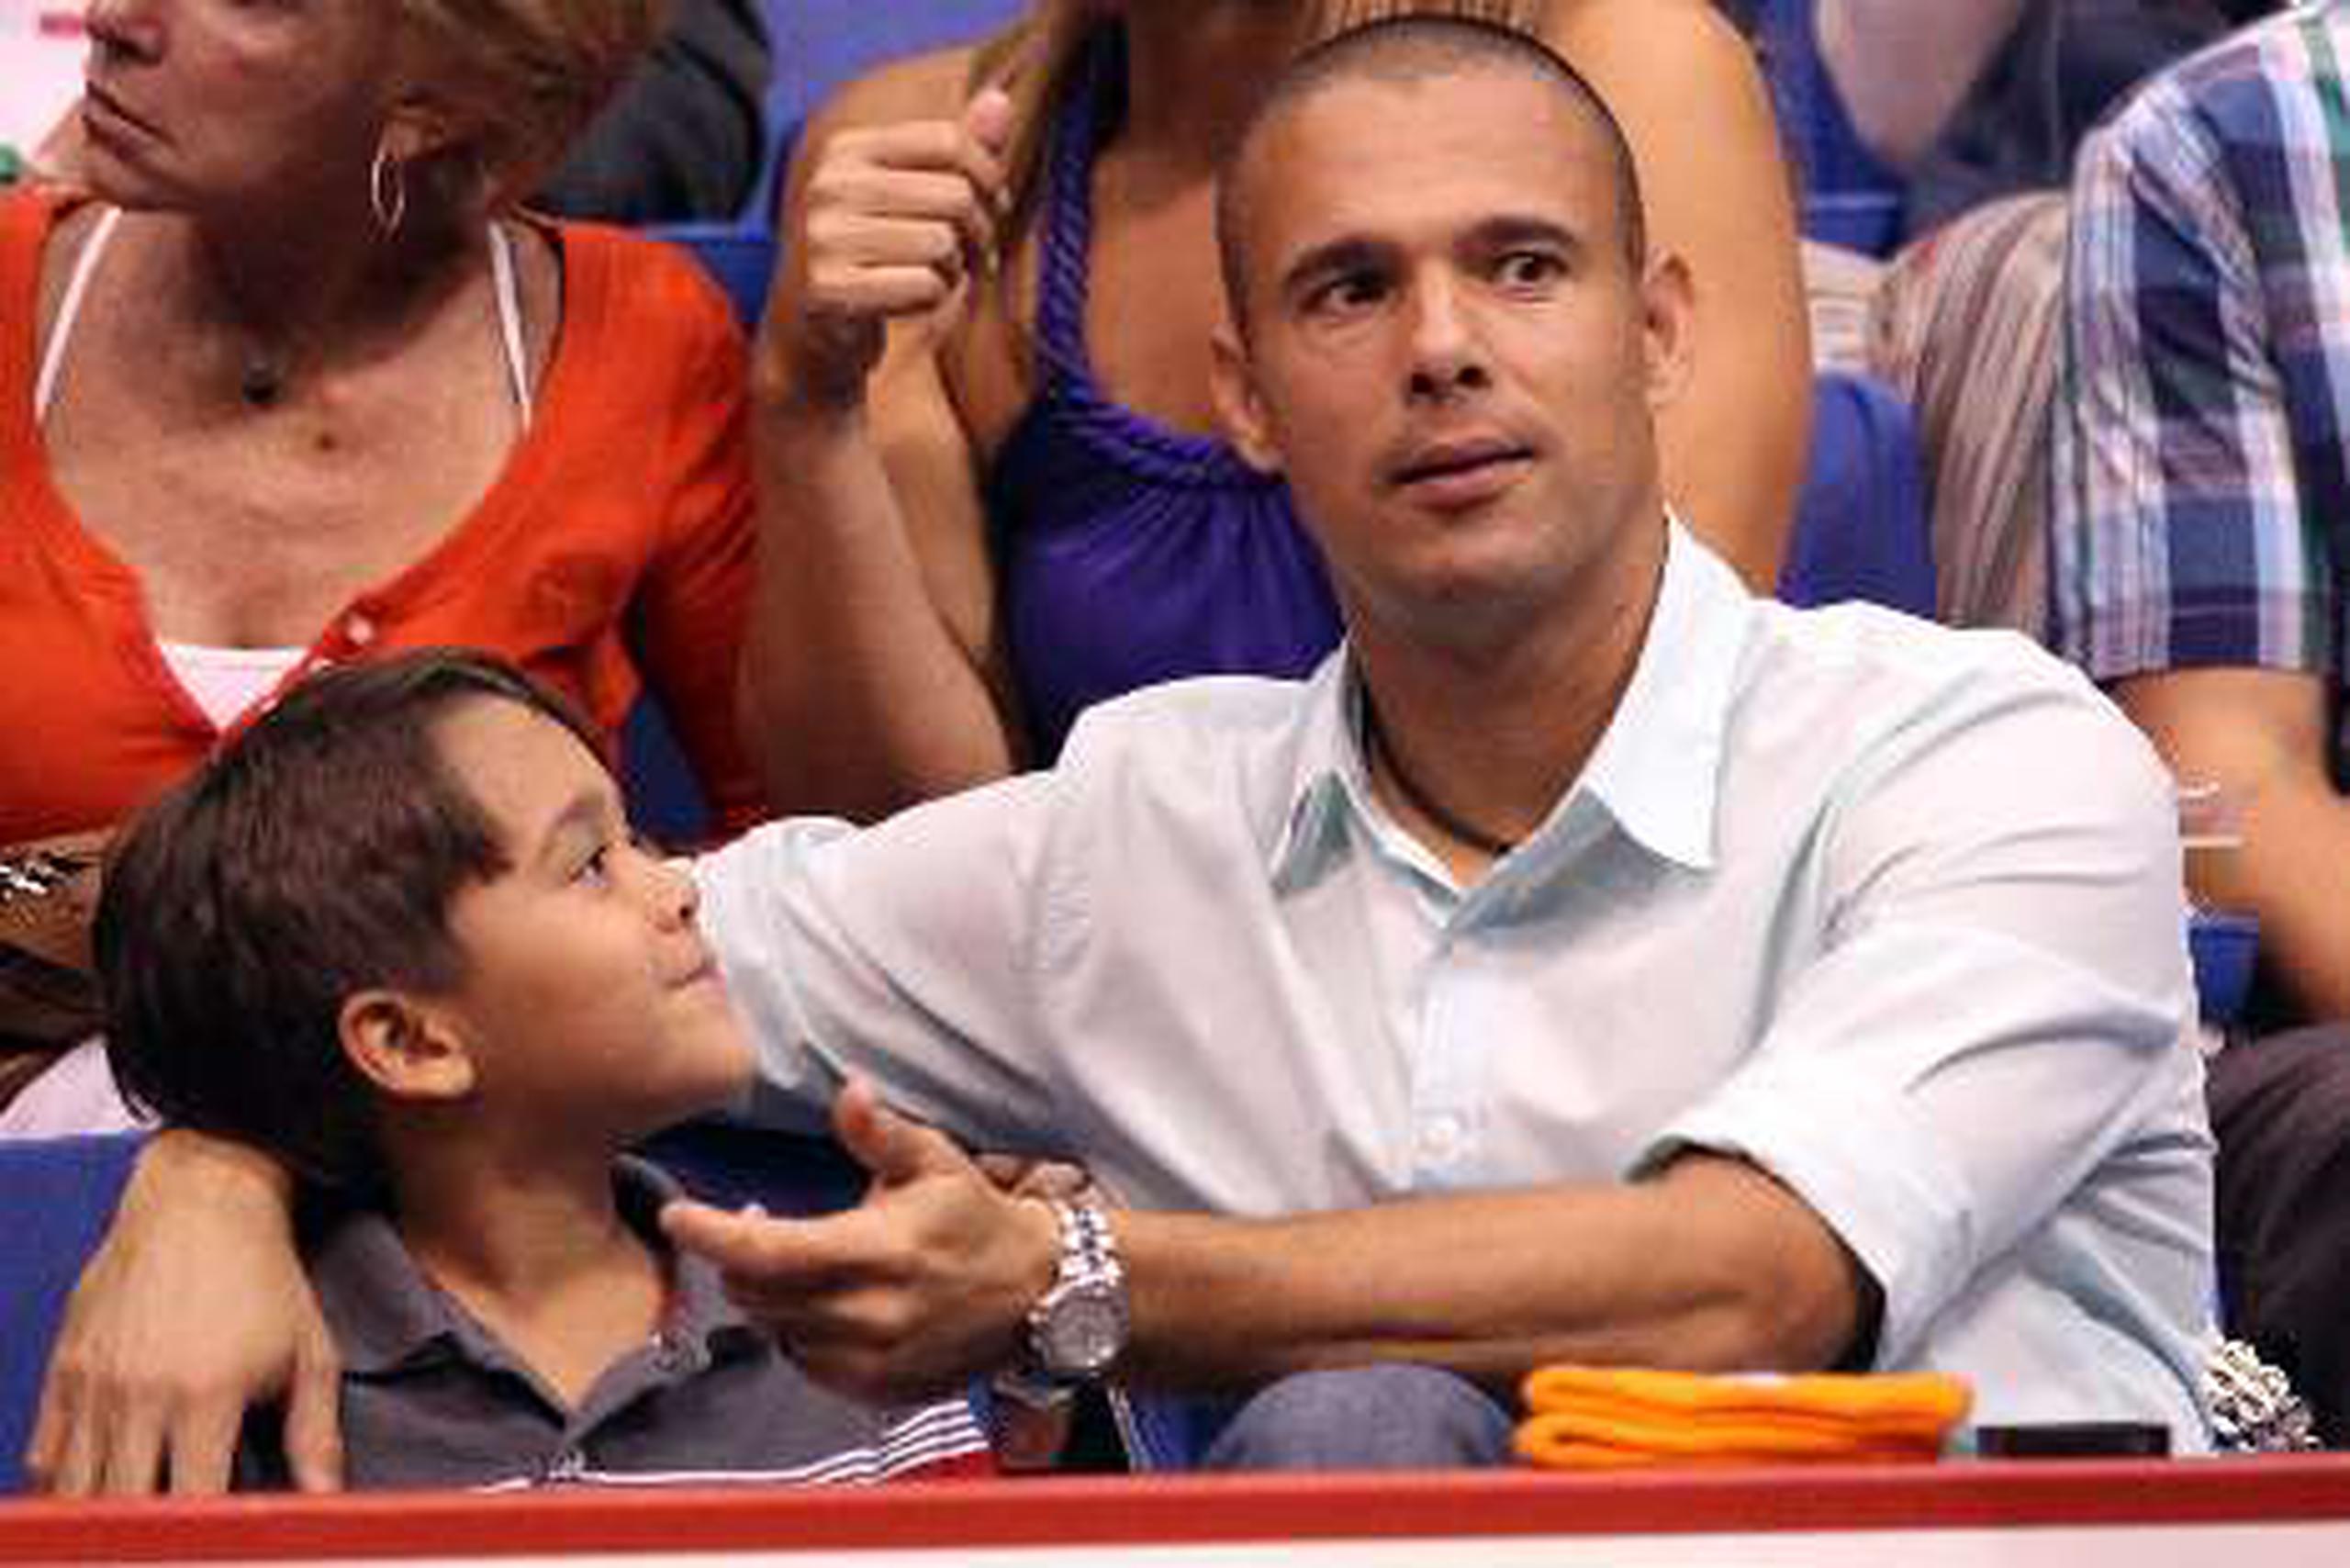 Tiempo para la familia El lanzador,   Javier Vázquez, disfrutó junto a su  hijo la jornada del lunes del   Puerto Rico Tennis Cup.&nbsp;<font color="yellow">(Primera Hora / Juan Luis Martínez Pérez)</font>